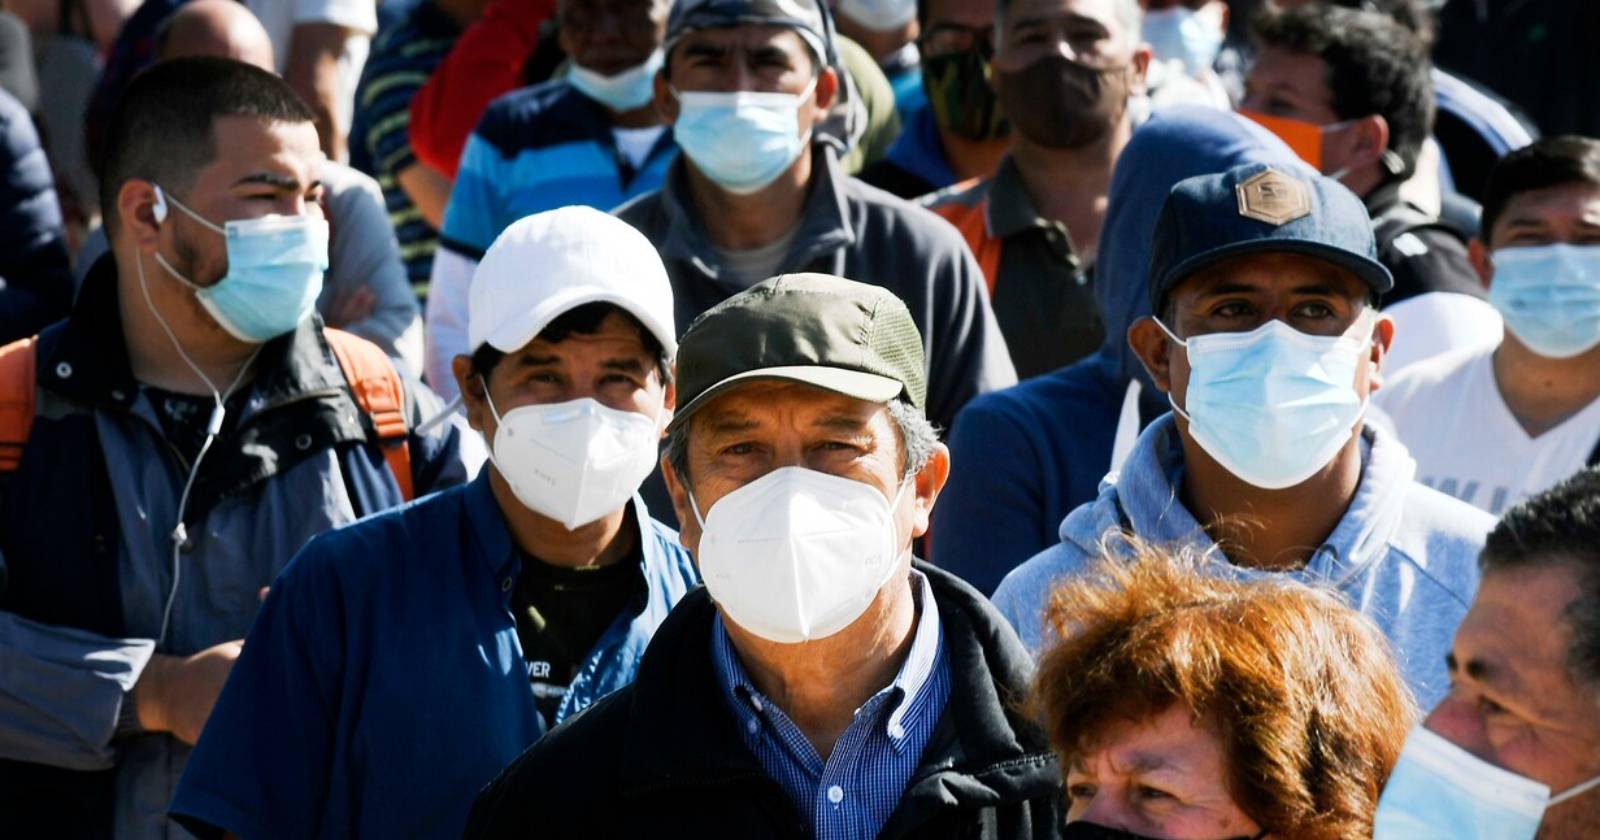 Como medida para contener el avance de la pandemia, las autoridades de Perú anunciaron que el uso de doble mascarilla será obligatorio a partir en los supermercados y centros comerciales del país.